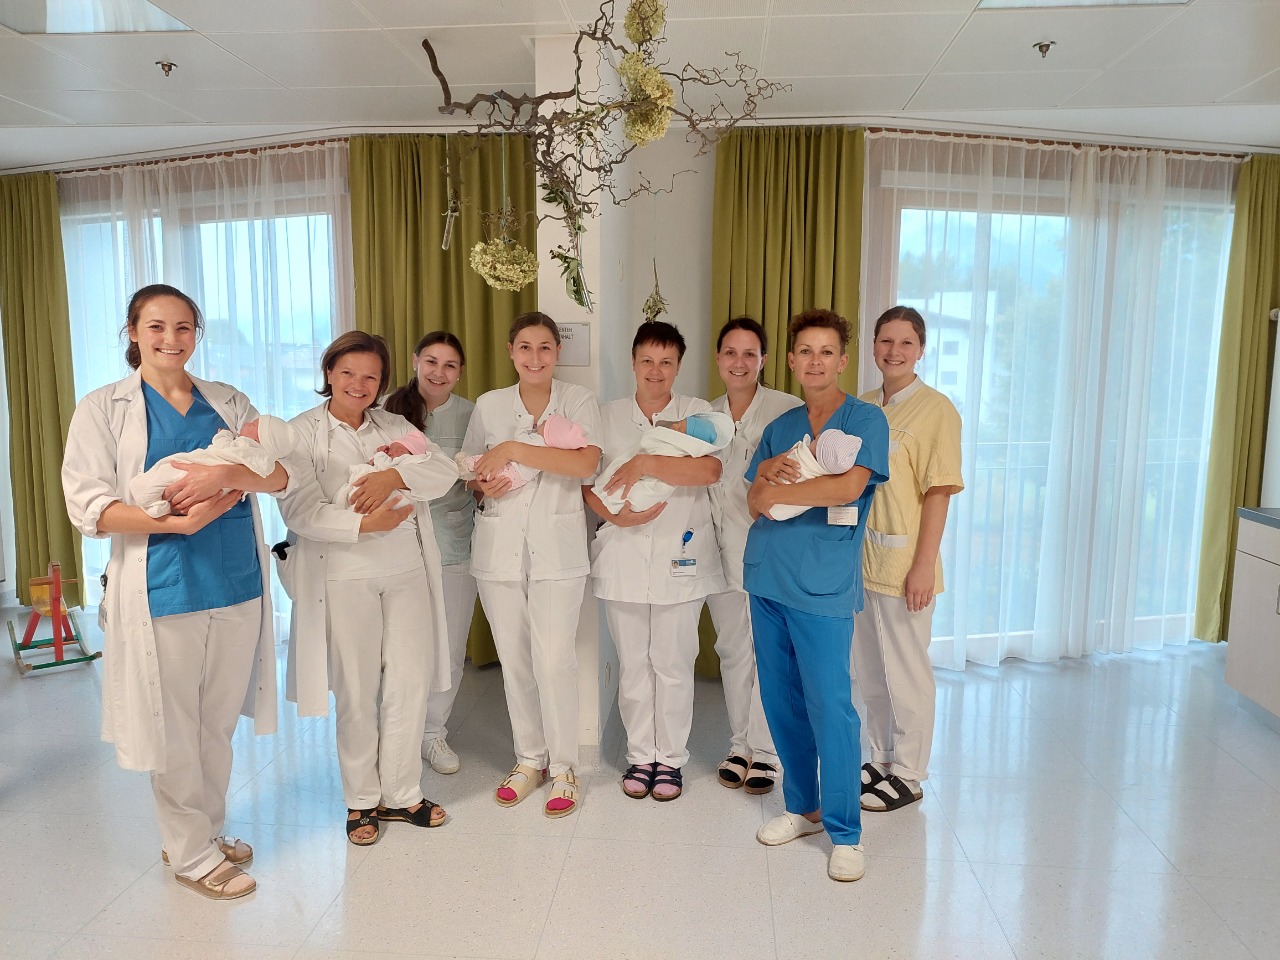 Mitarbeiter:innen mit Neugeborenen